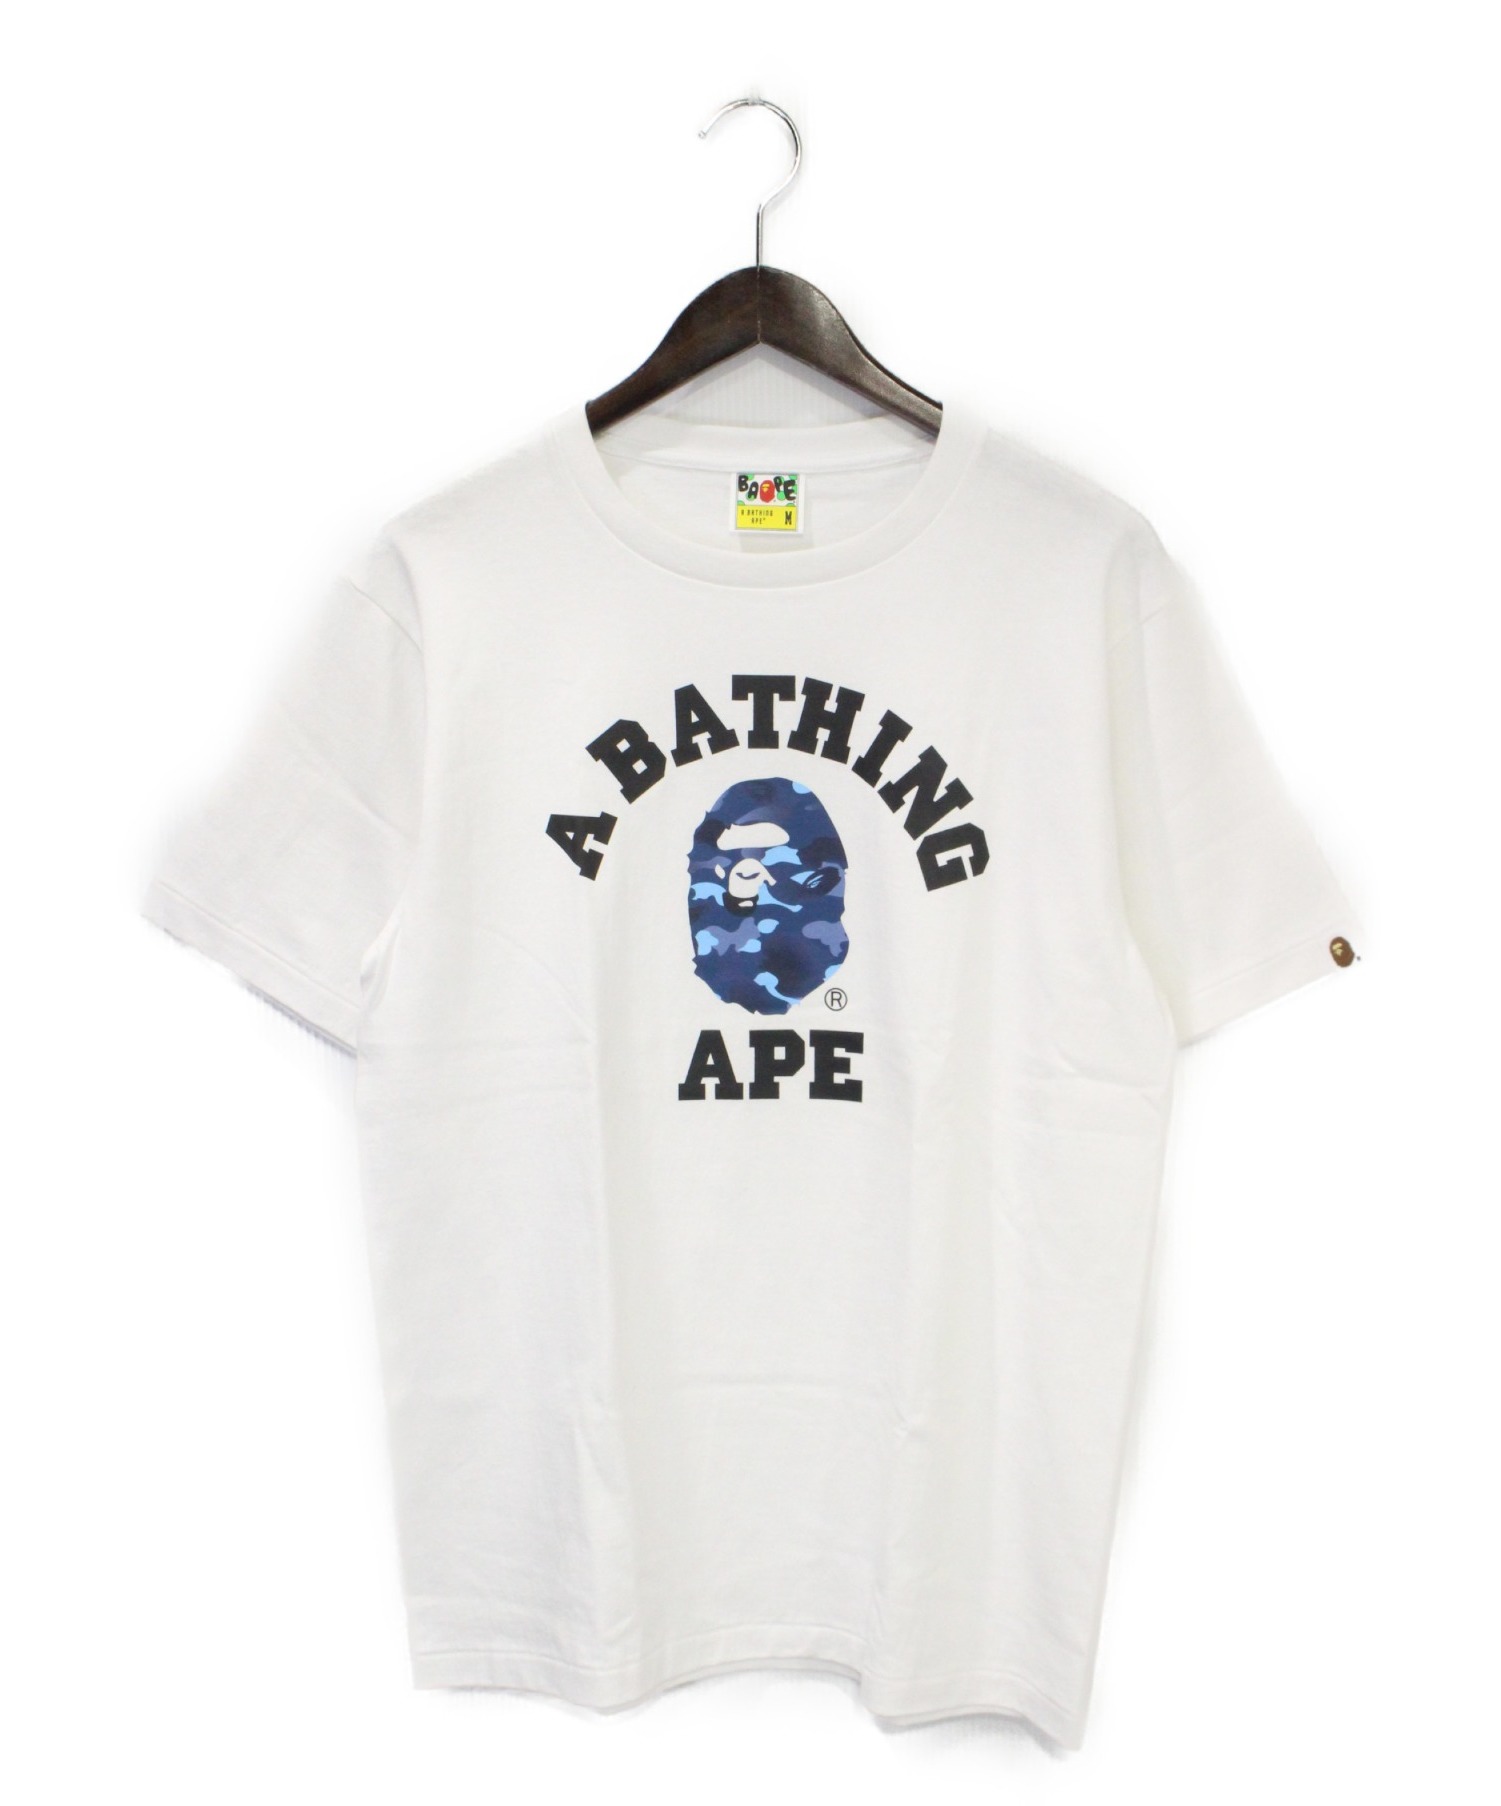 A BATHING APE (ア ベイシング エイプ) Tシャツ ホワイト サイズ:M